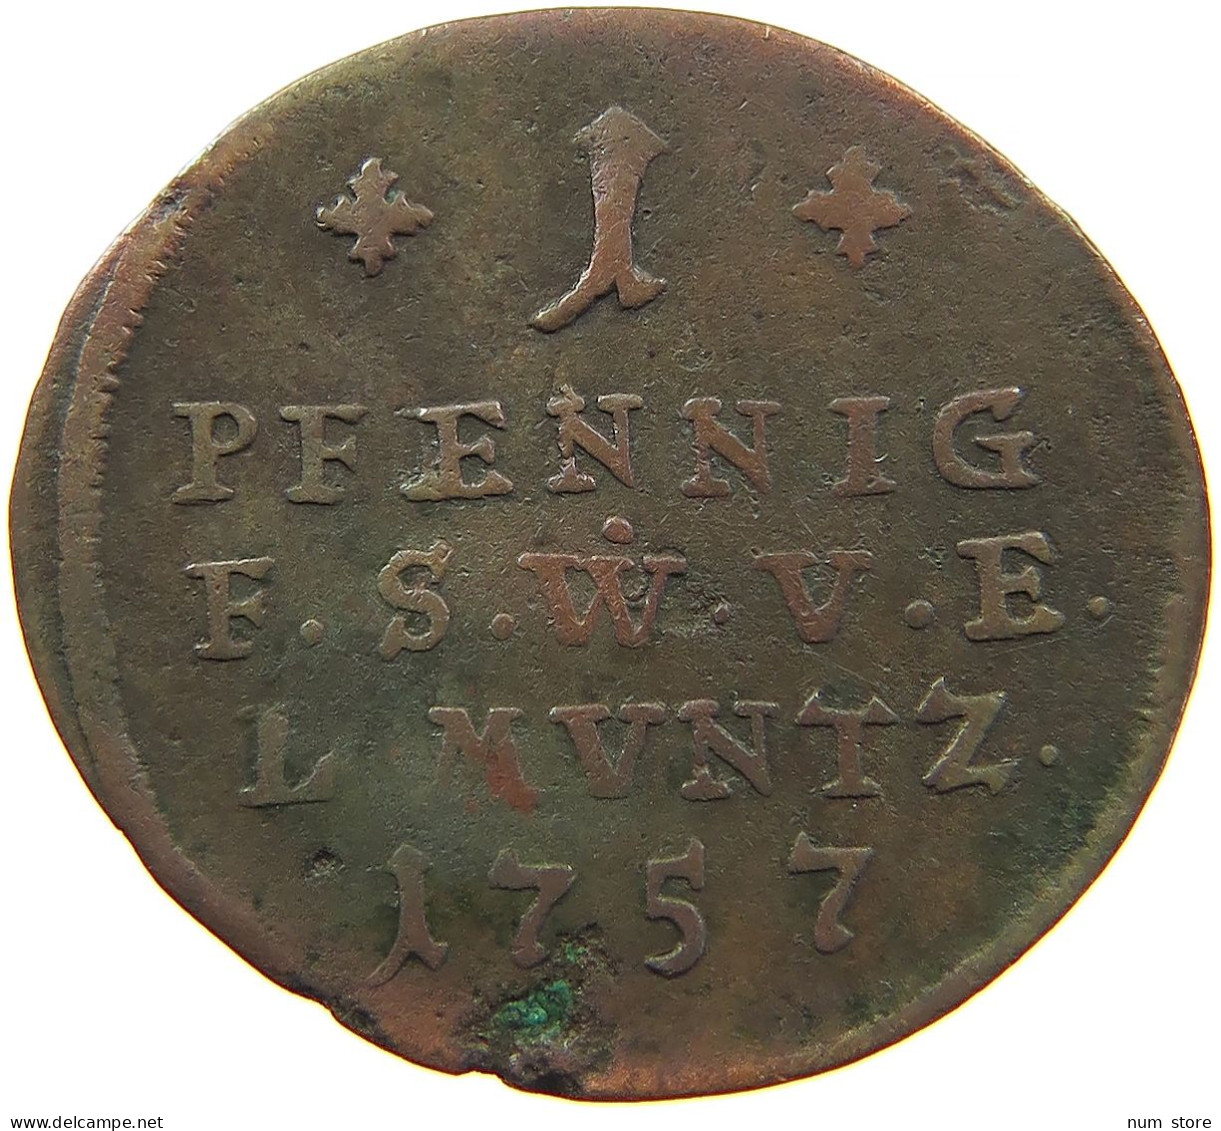 GERMAN STATES 1 PFENNIG 1757 SACHSEN WEIMAR EISENACH Ernst August Constantin 1756-1758 #t032 0997 - Small Coins & Other Subdivisions